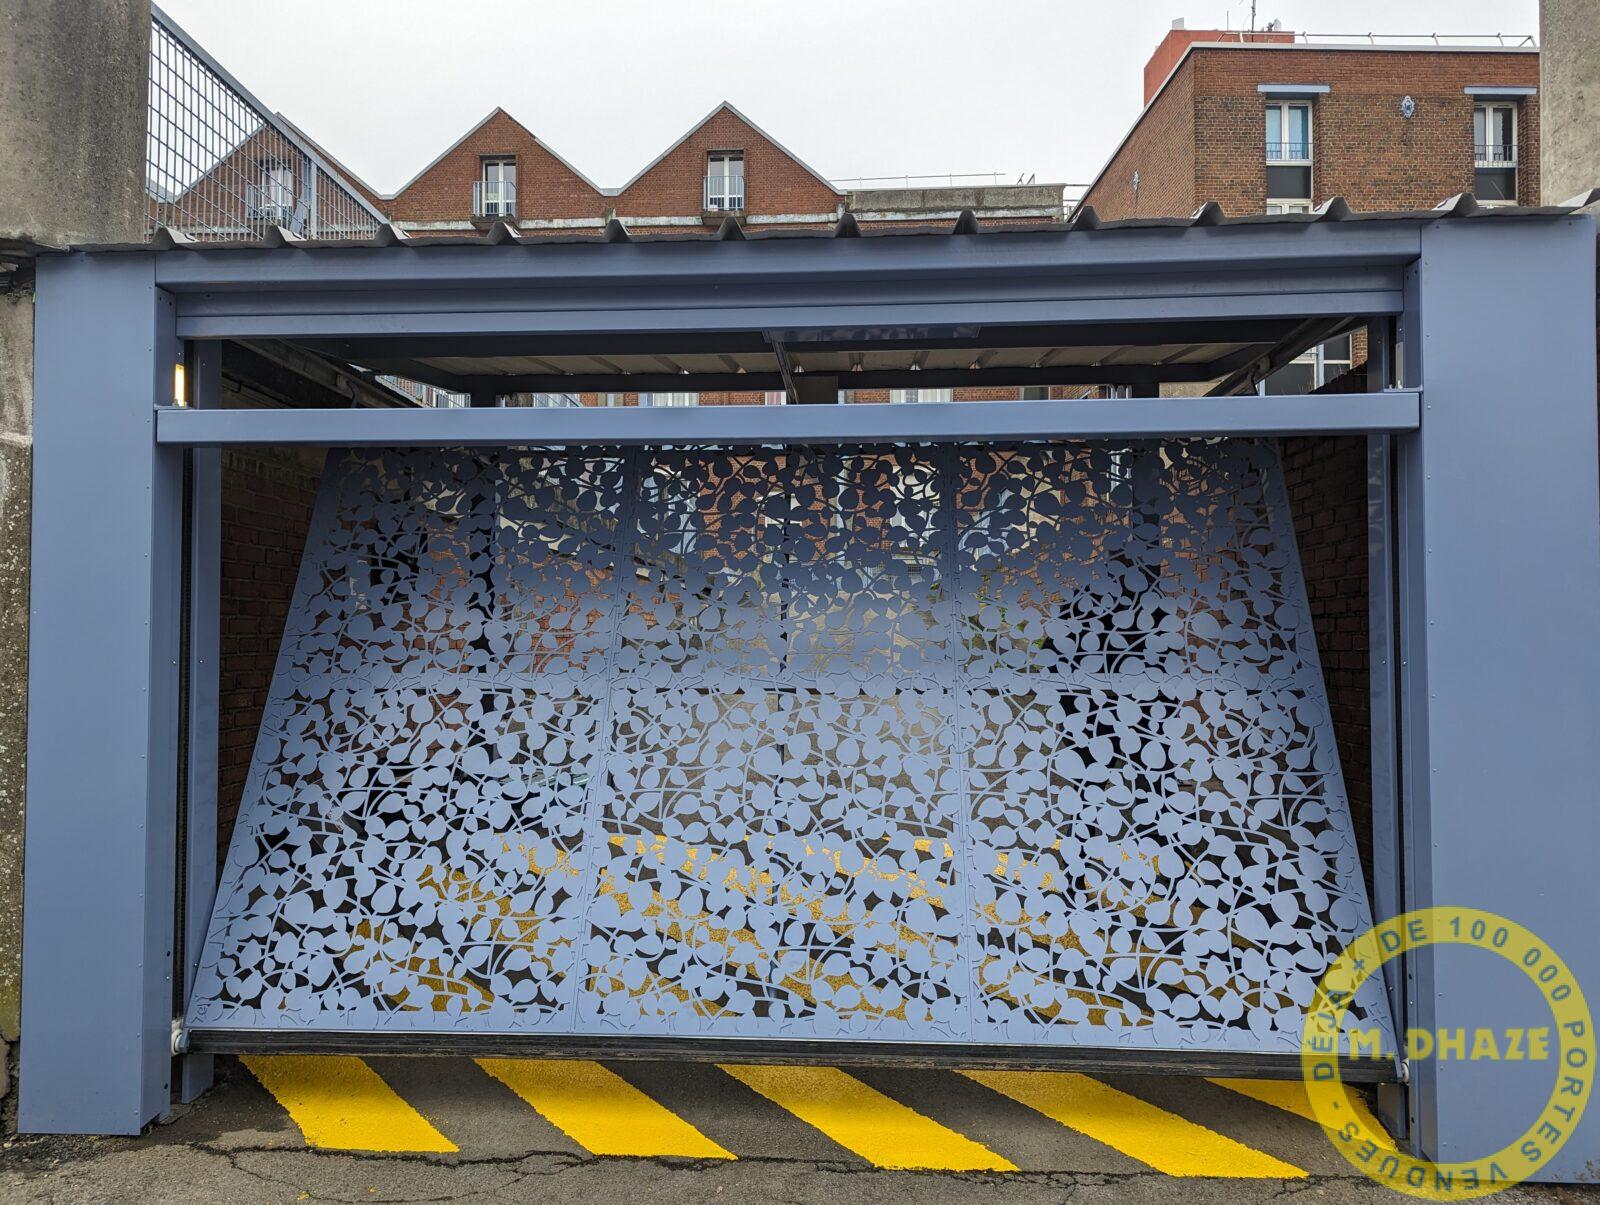 Installation de porte basculante motorisée d'entrée parking dans immeuble collectif à Tourcoing (59).